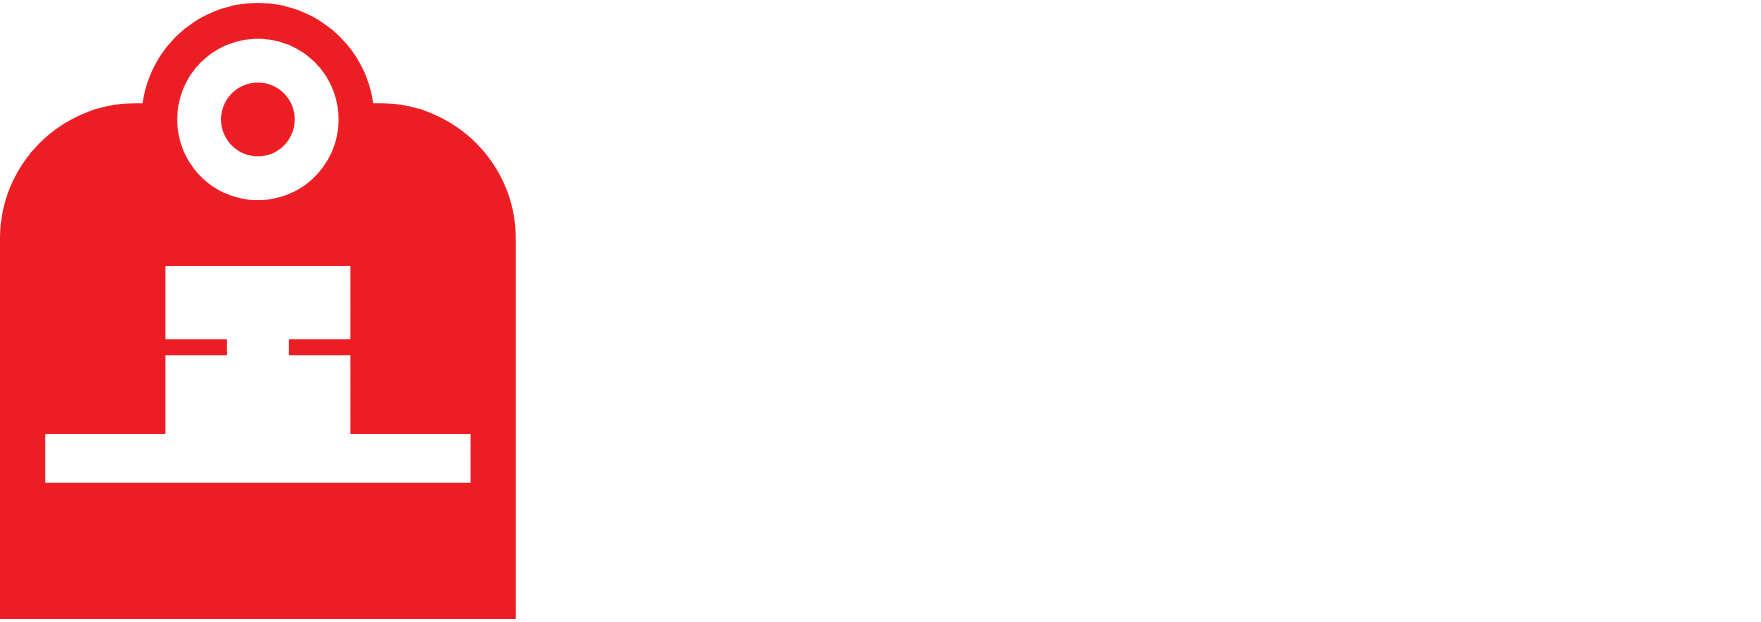 Indian Railway Finance Logo groß für dunkle Hintergründe (transparentes PNG)